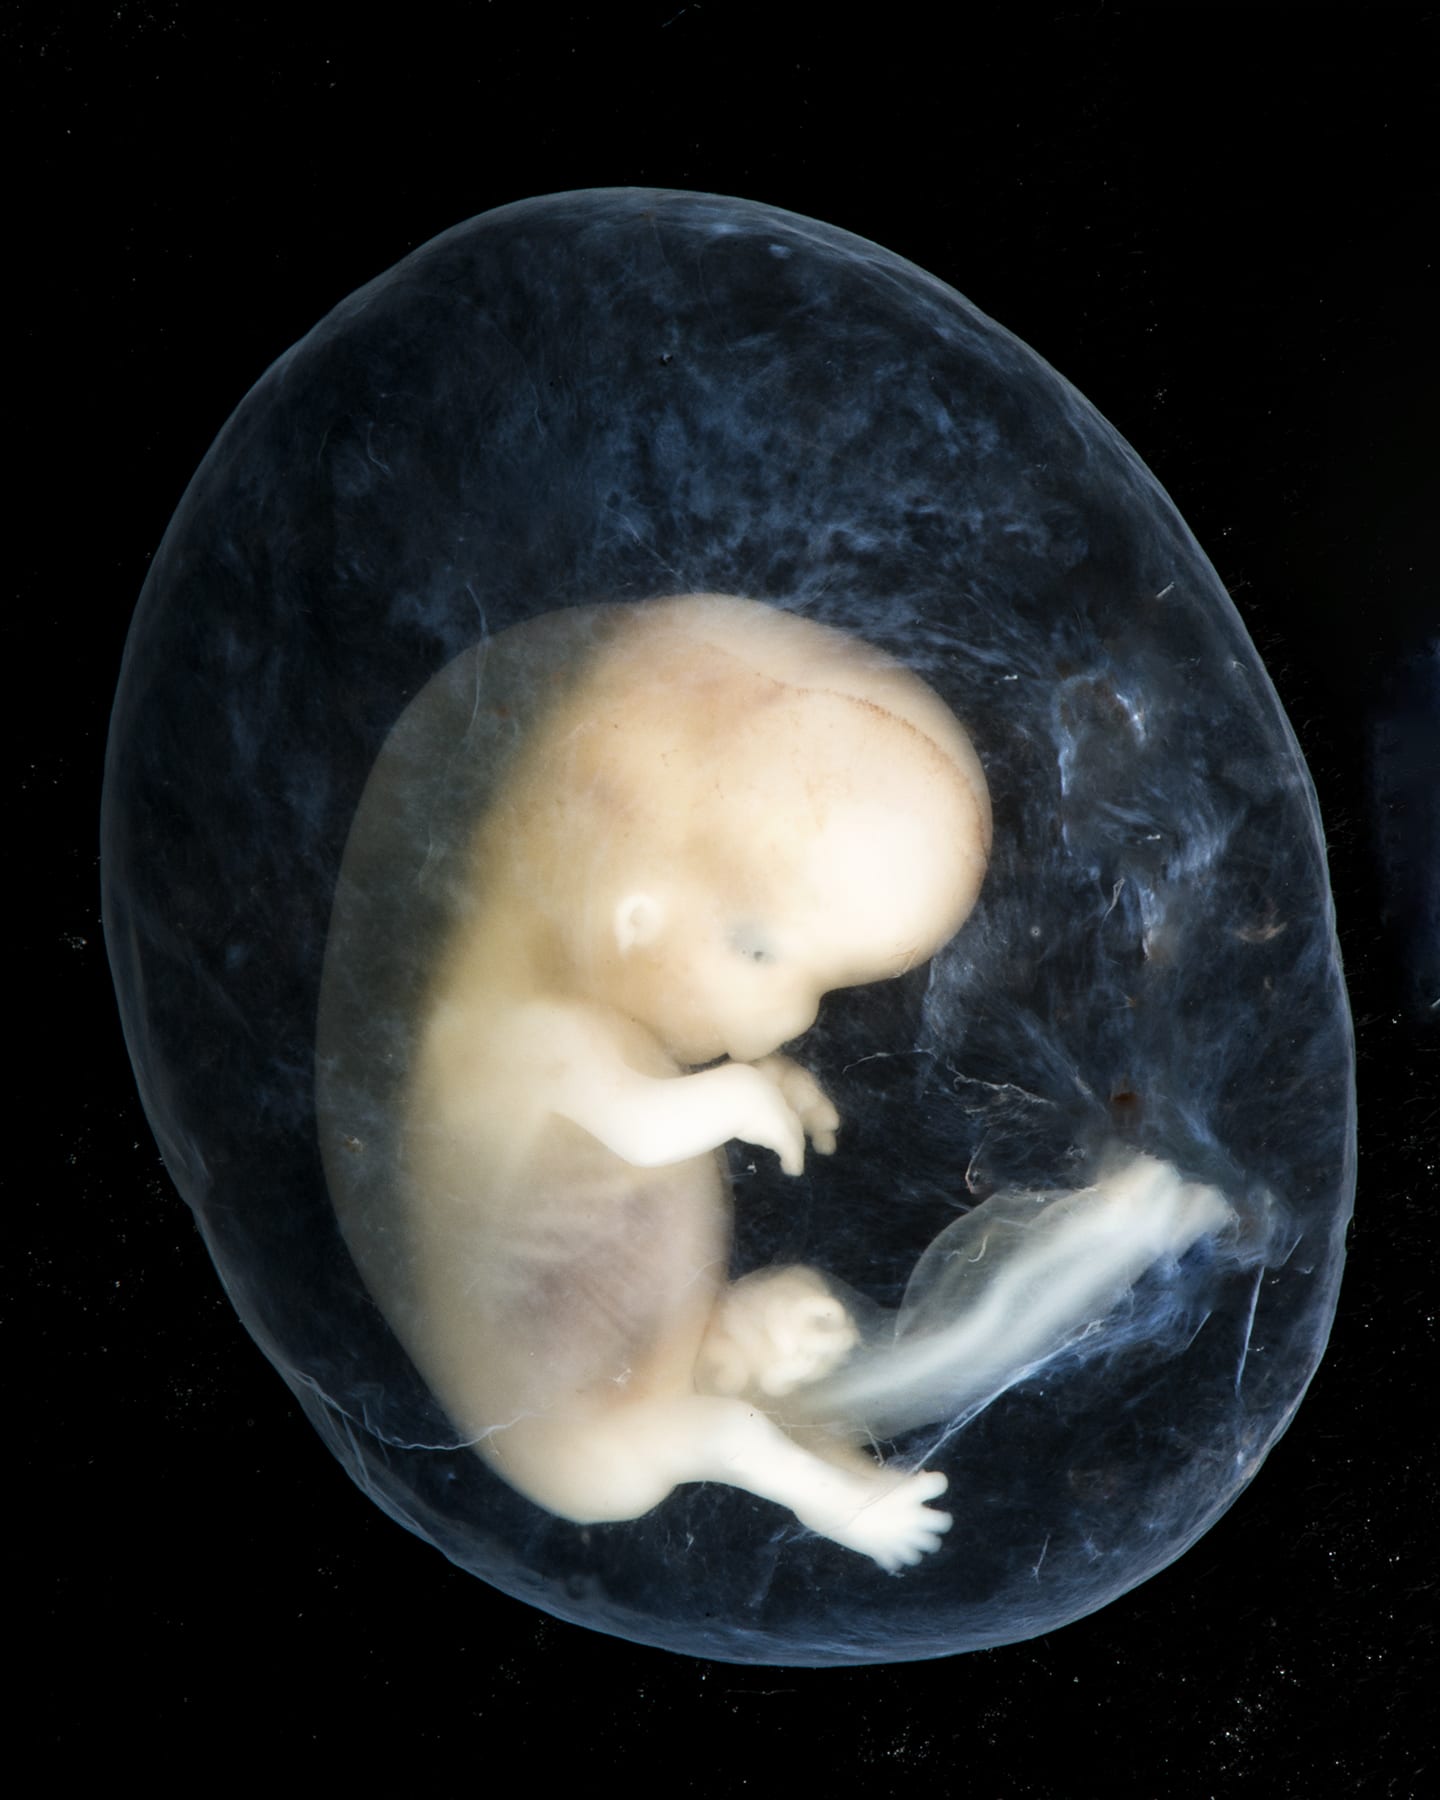 Как выглядит плод в 2 месяца беременности фото